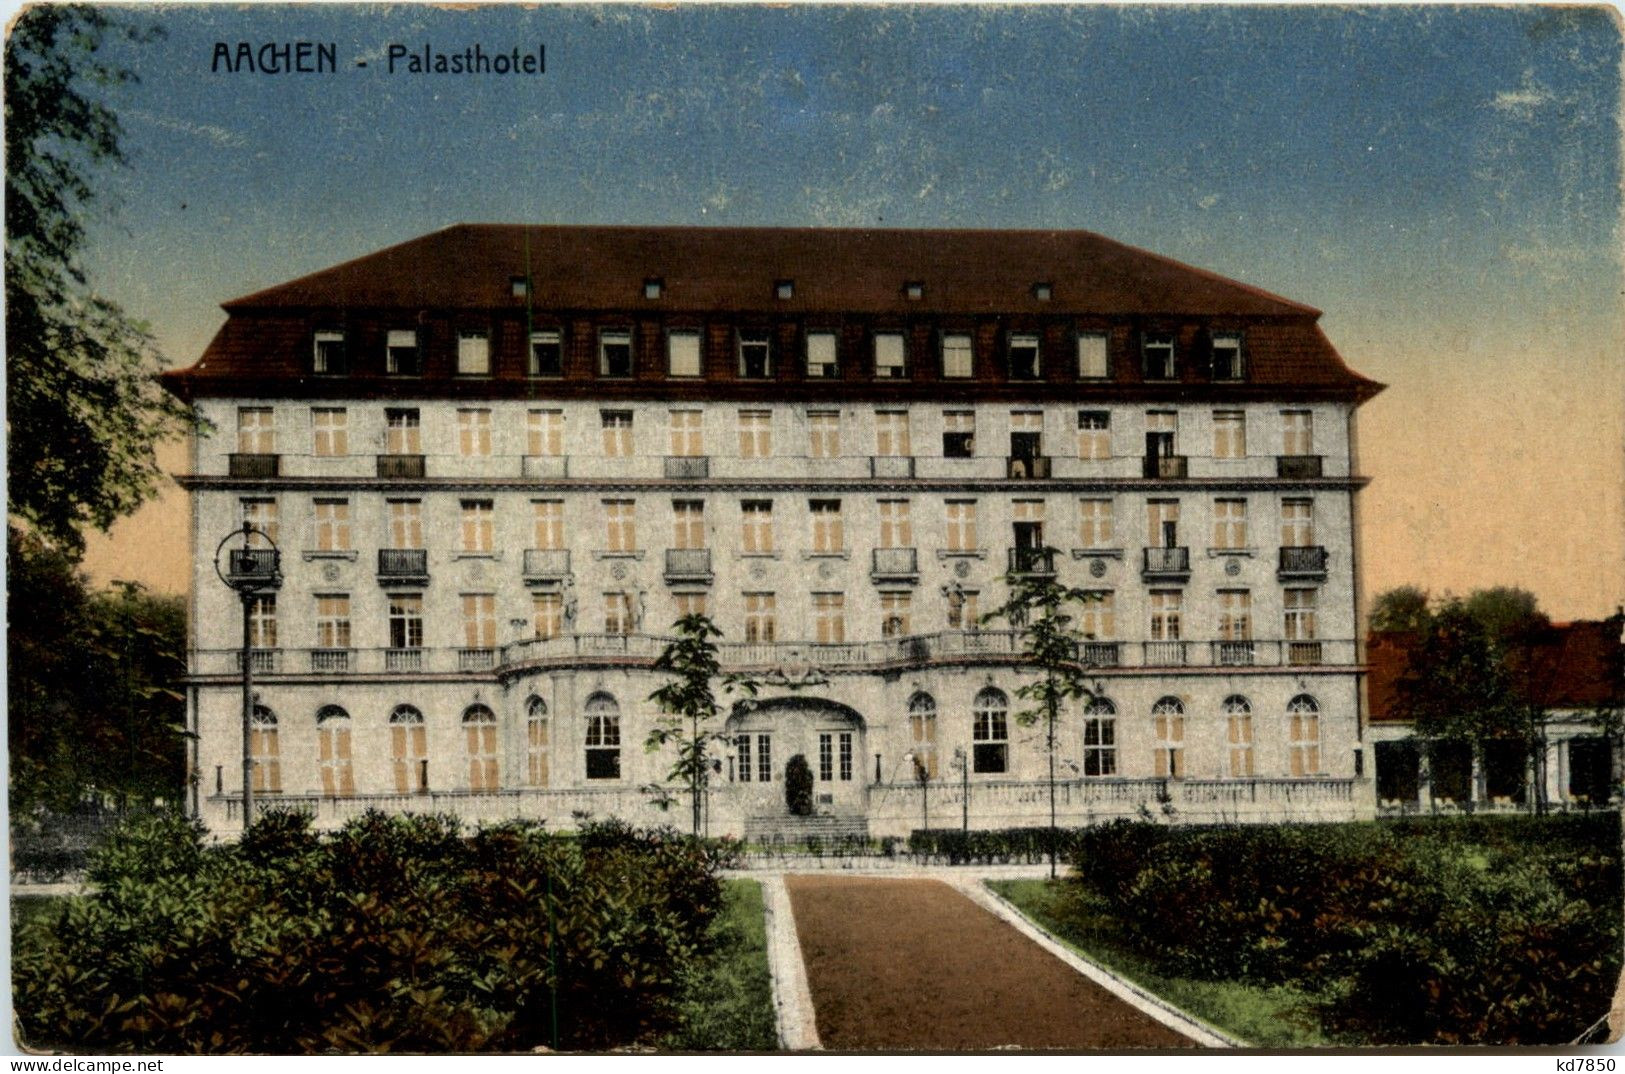 Aachen - Palasthotel - Aachen